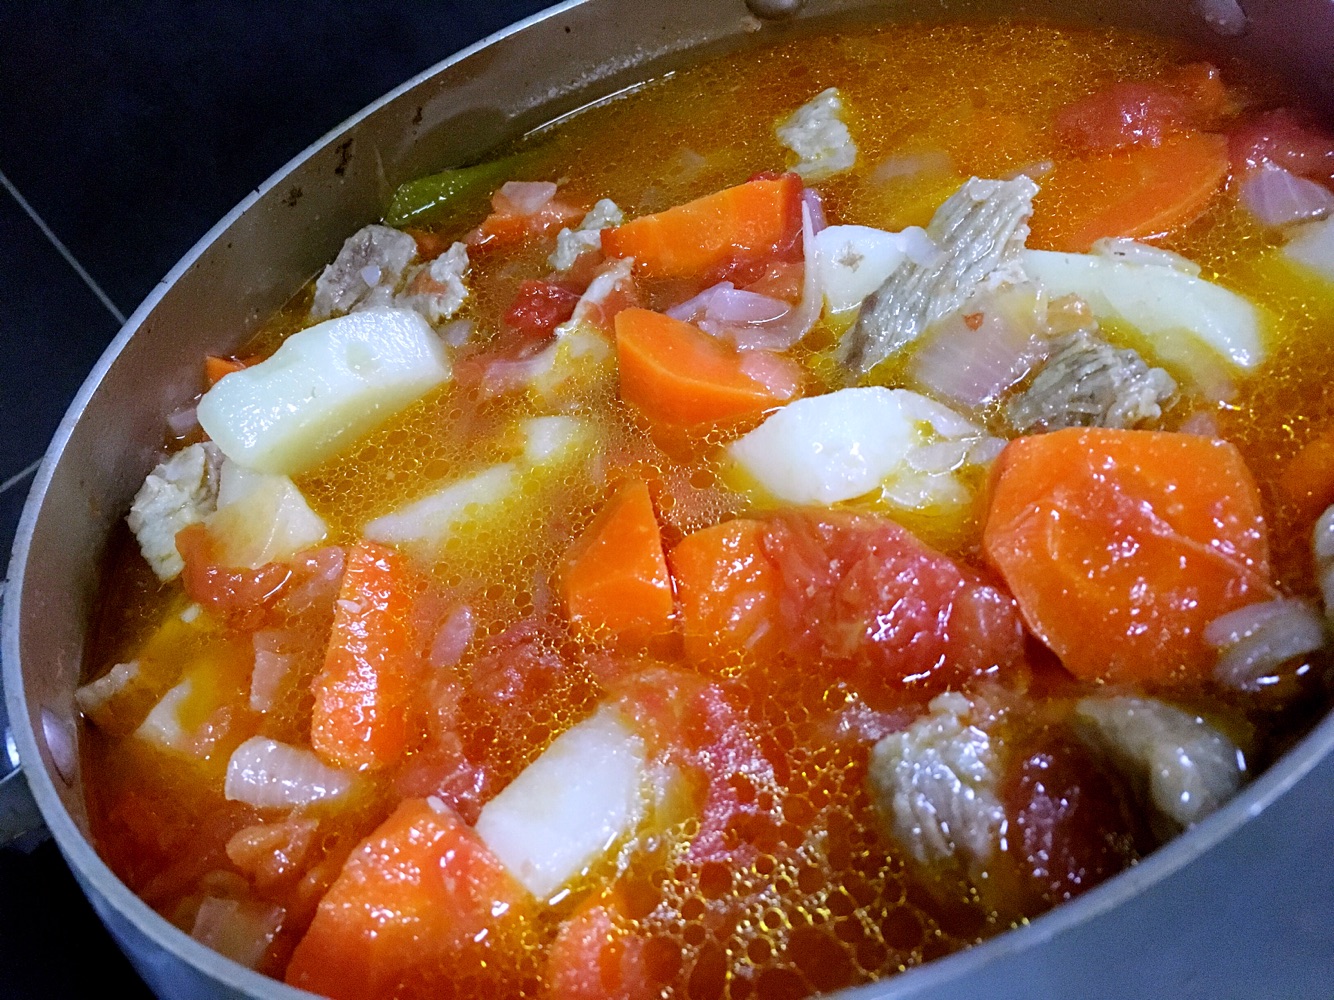 番茄+排骨+湯料理的1種做法 - 食譜主題網